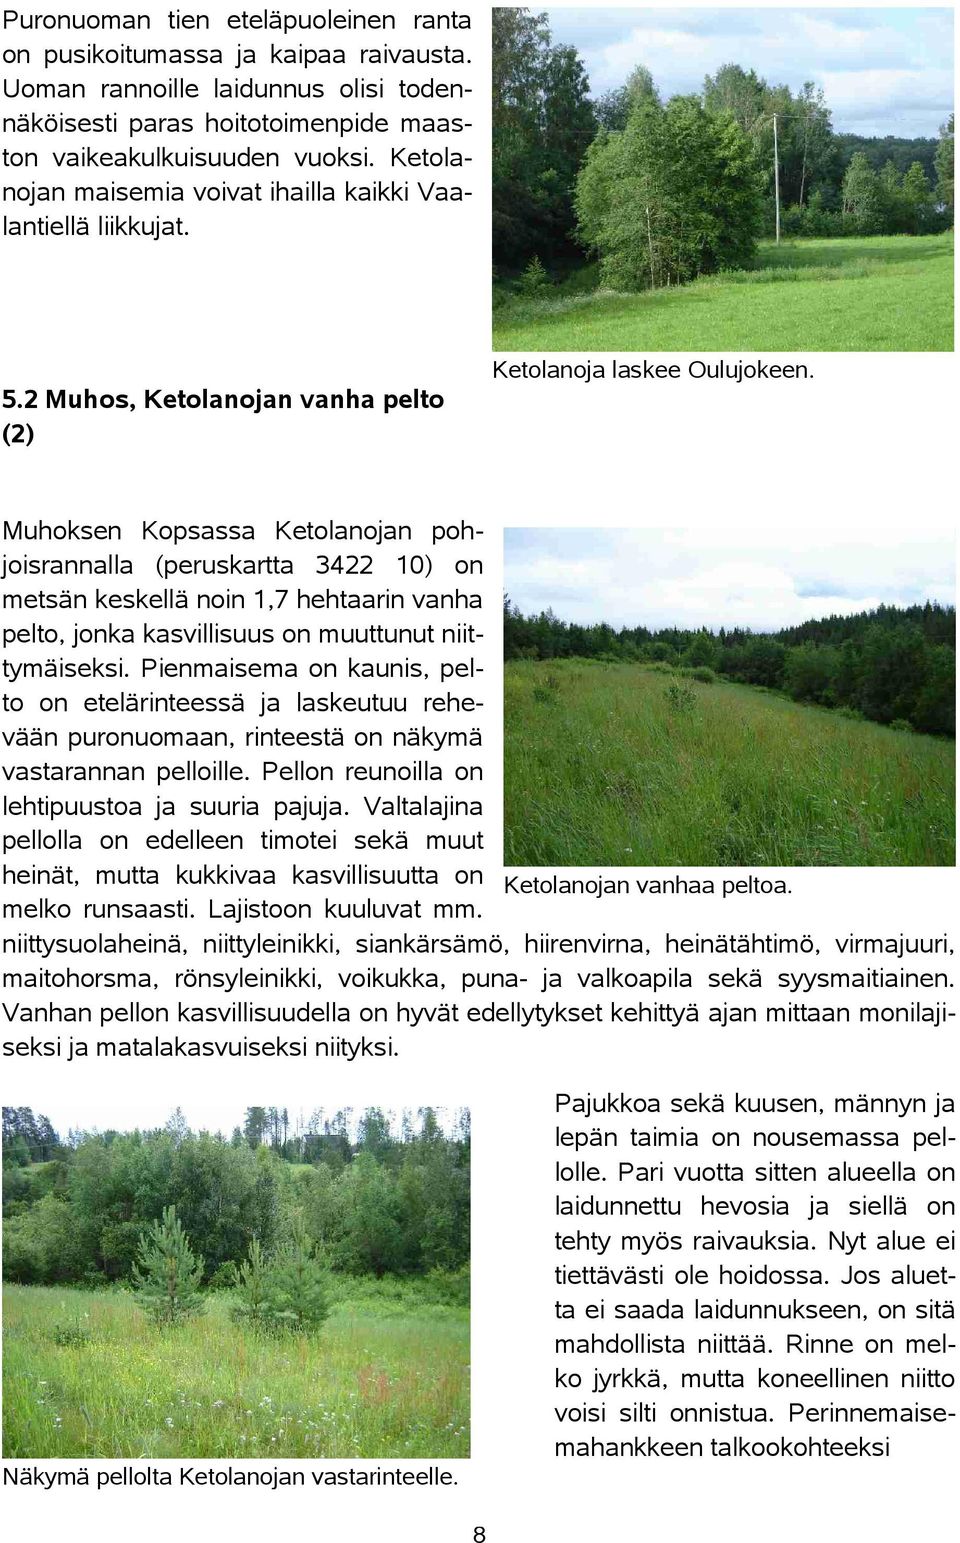 2 Muhos, Ketolanojan vanha pelto (2) Muhoksen Kopsassa Ketolanojan pohjoisrannalla (peruskartta 3422 10) on metsän keskellä noin 1,7 hehtaarin vanha pelto, jonka kasvillisuus on muuttunut